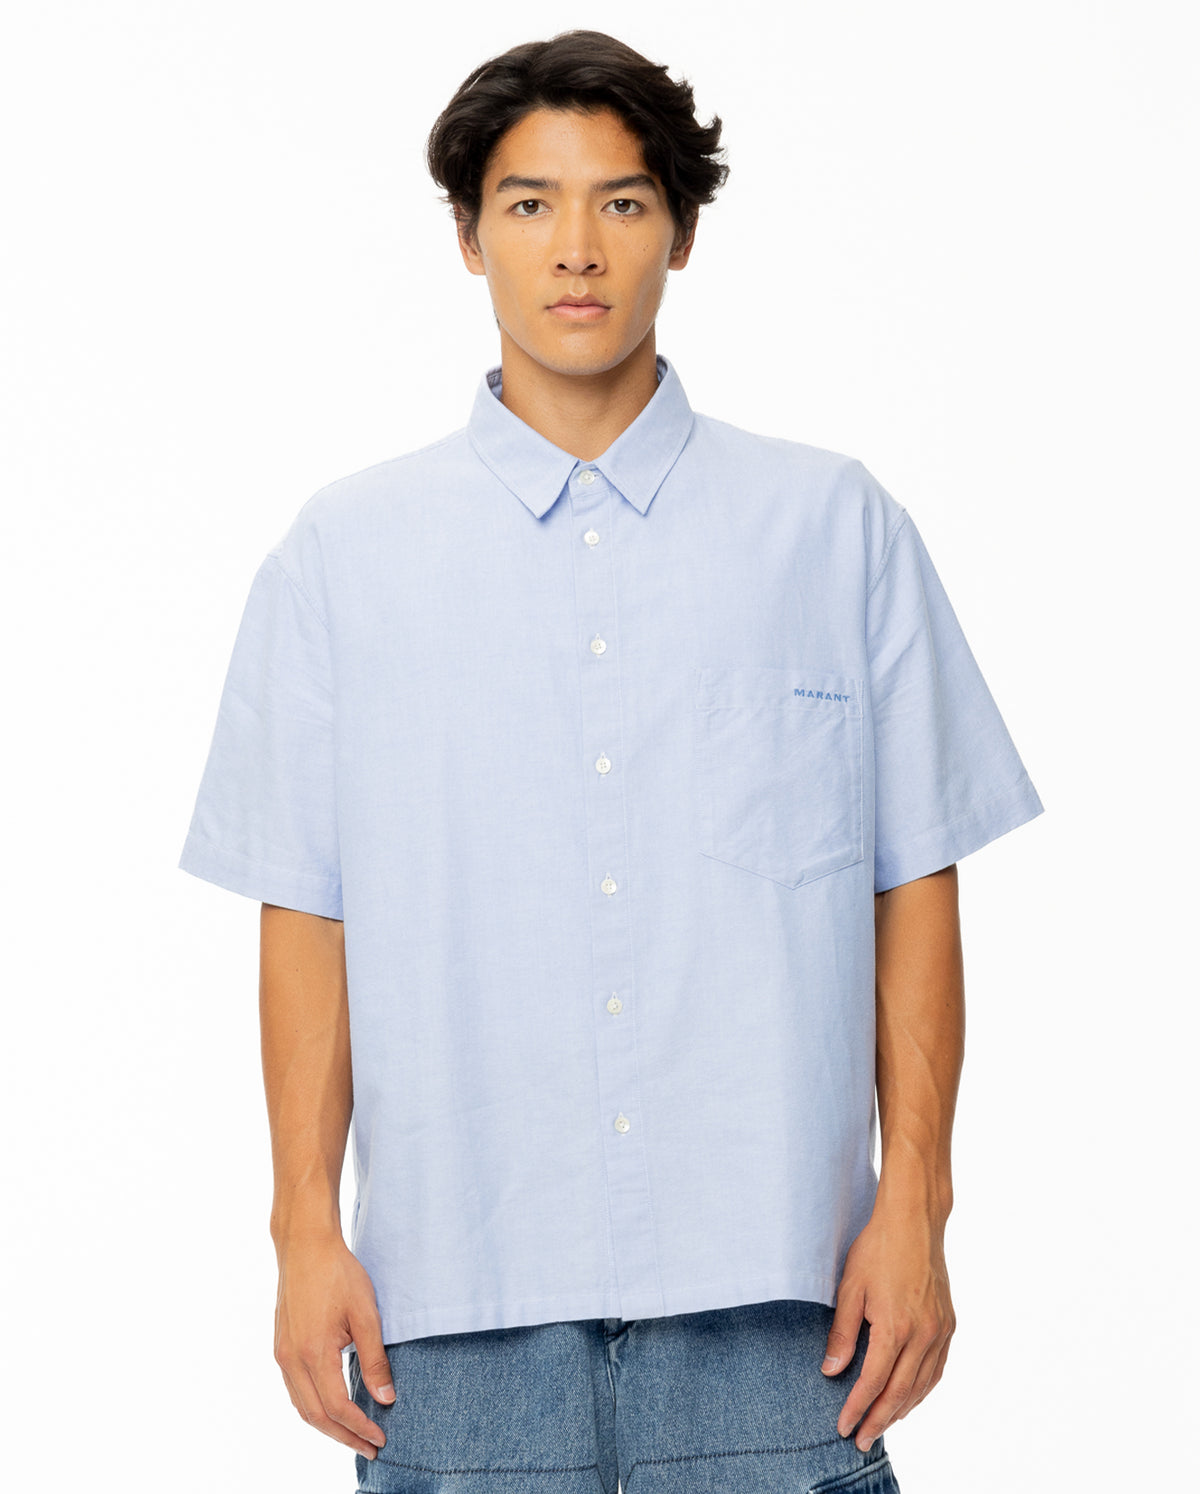 Iggy Short Sleeve Button Up Shirt - Faded Blue